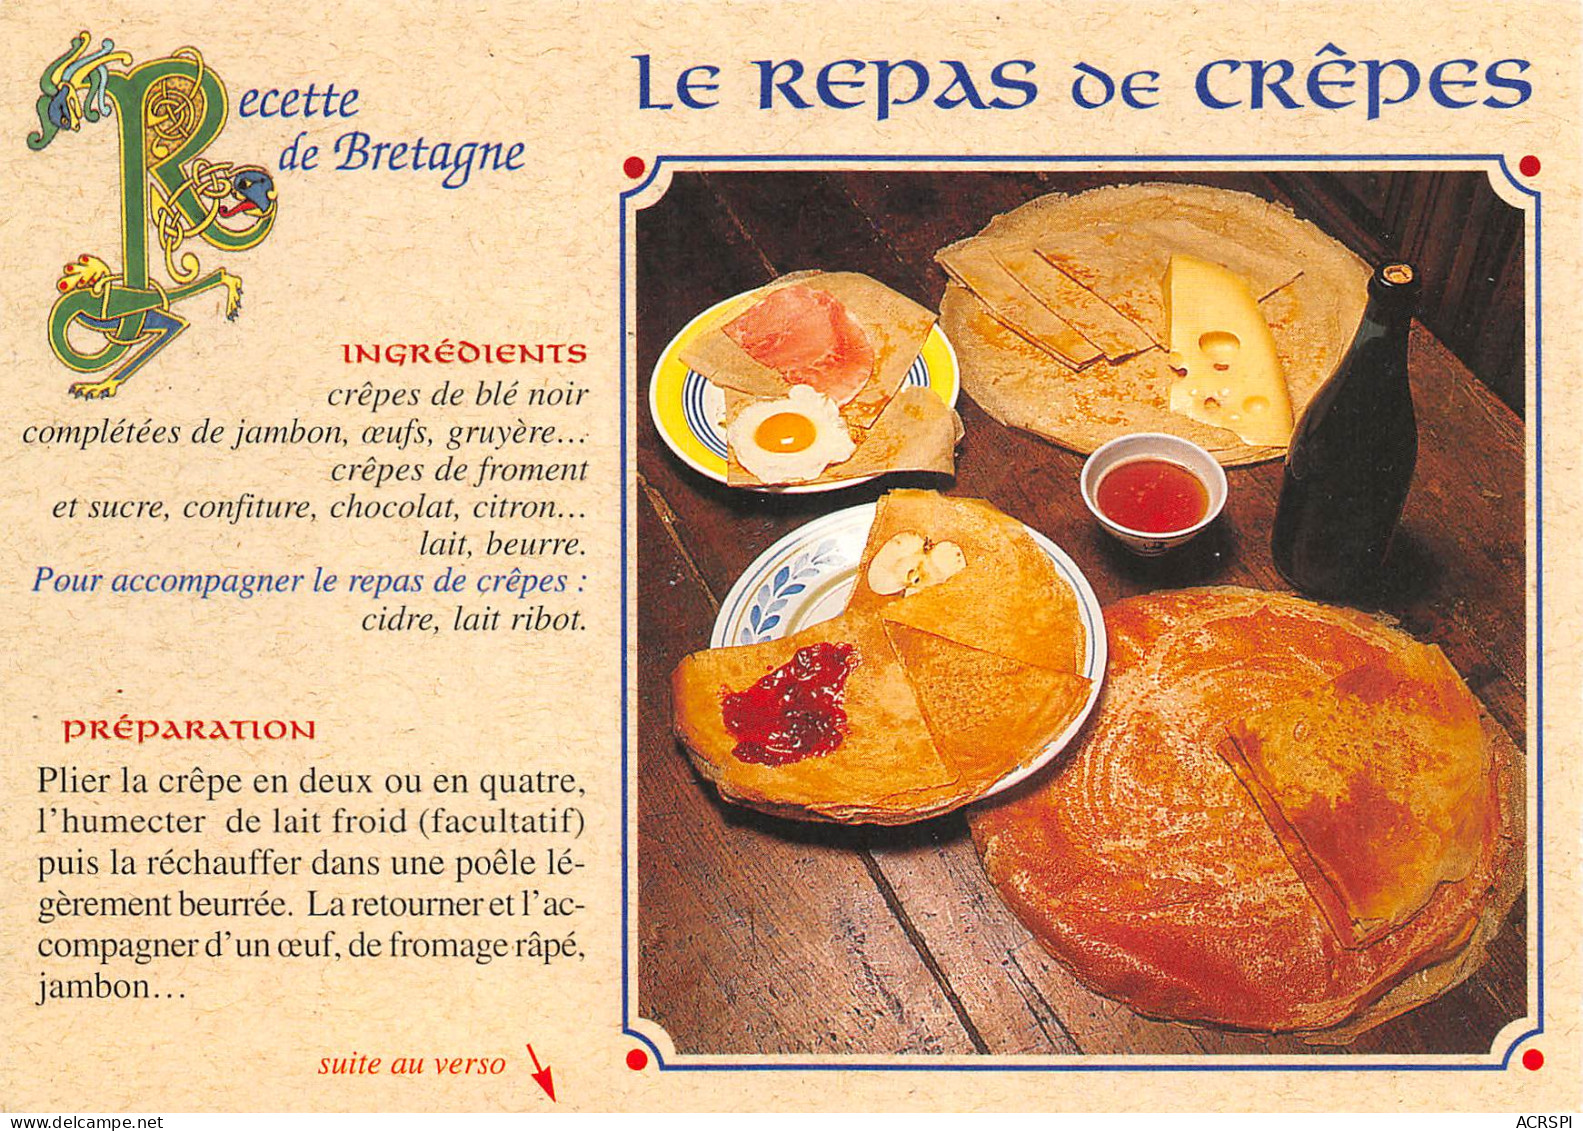 Recette Du Repas De Crêpes Bretonne Chateaulin   N° 54 \MK3029 - Küchenrezepte